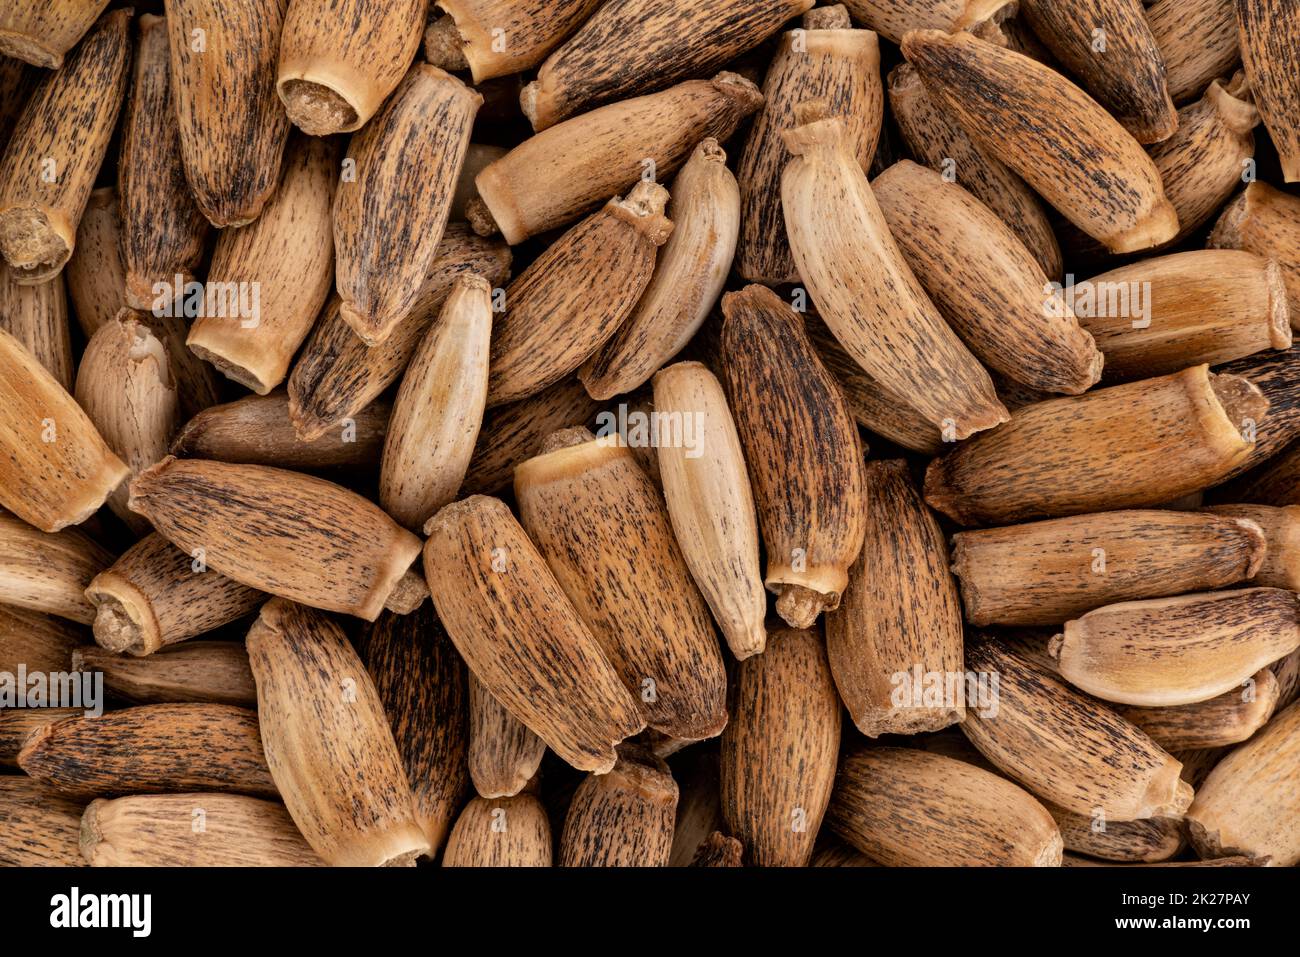 Montón de semillas de cardo de leche bendita - Silybum marianum - Detalle de microscopía de primer plano desde arriba, ancho de imagen 23mm Foto de stock